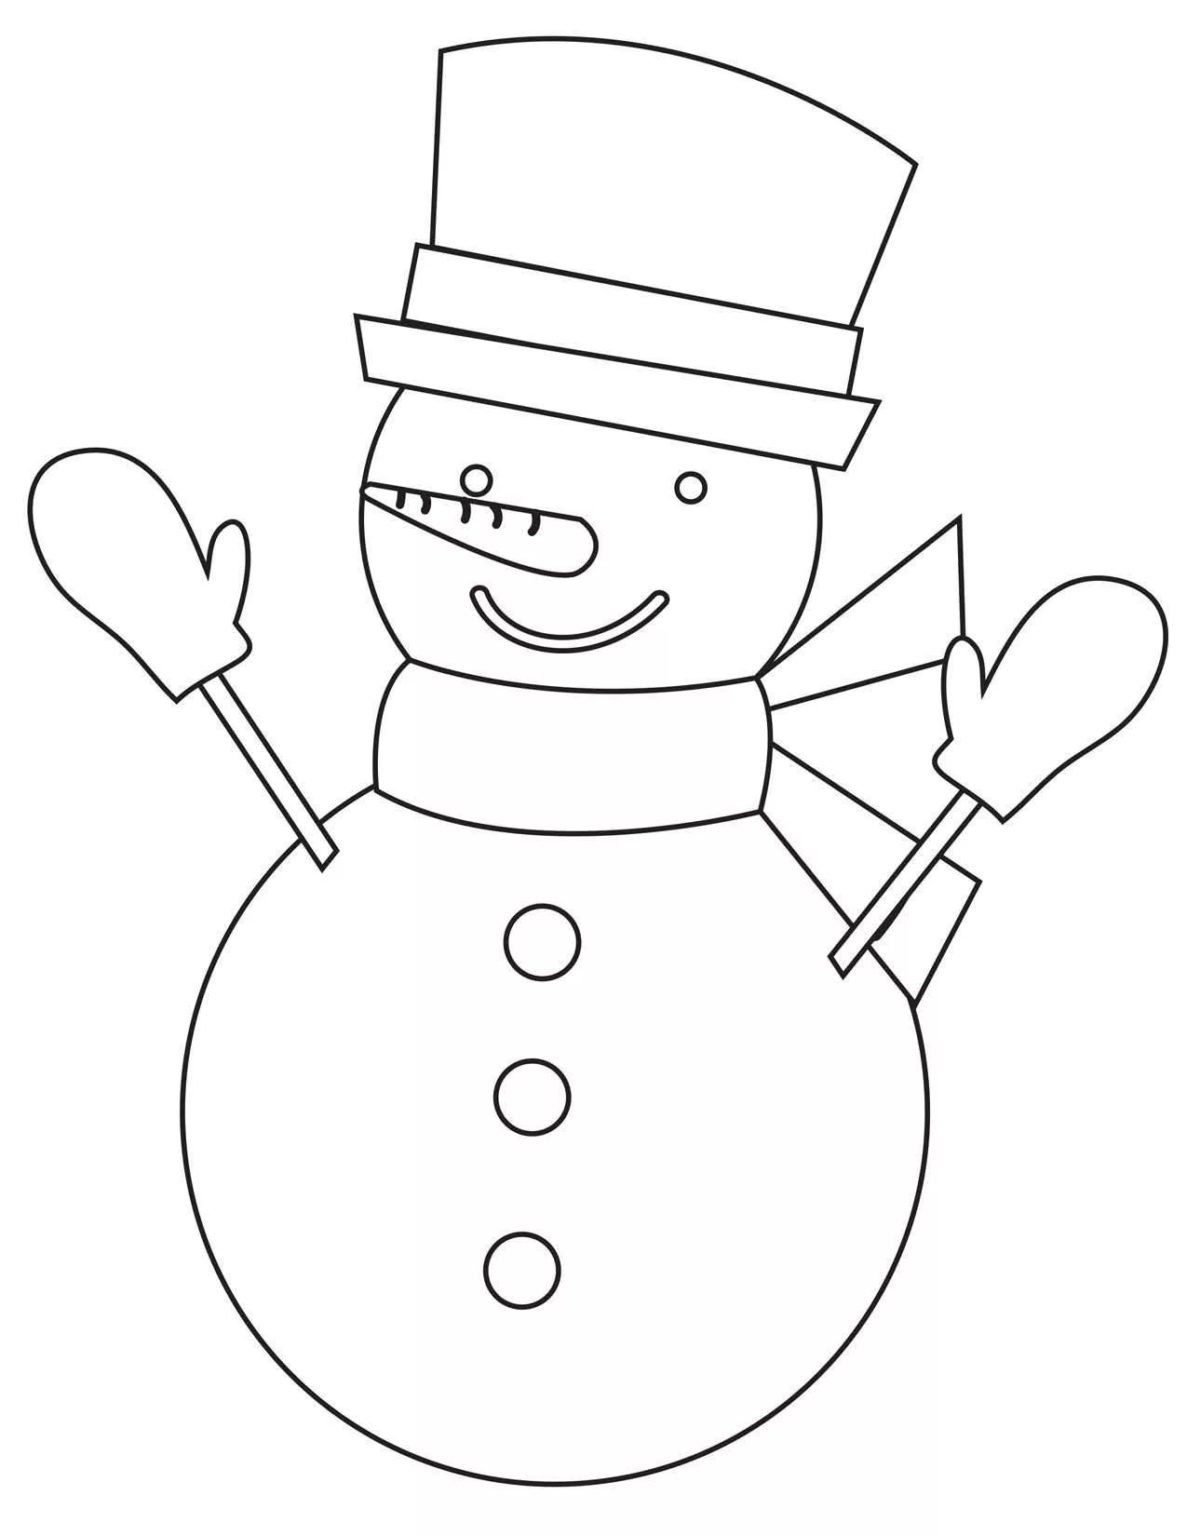 Контур снеговика для рисования